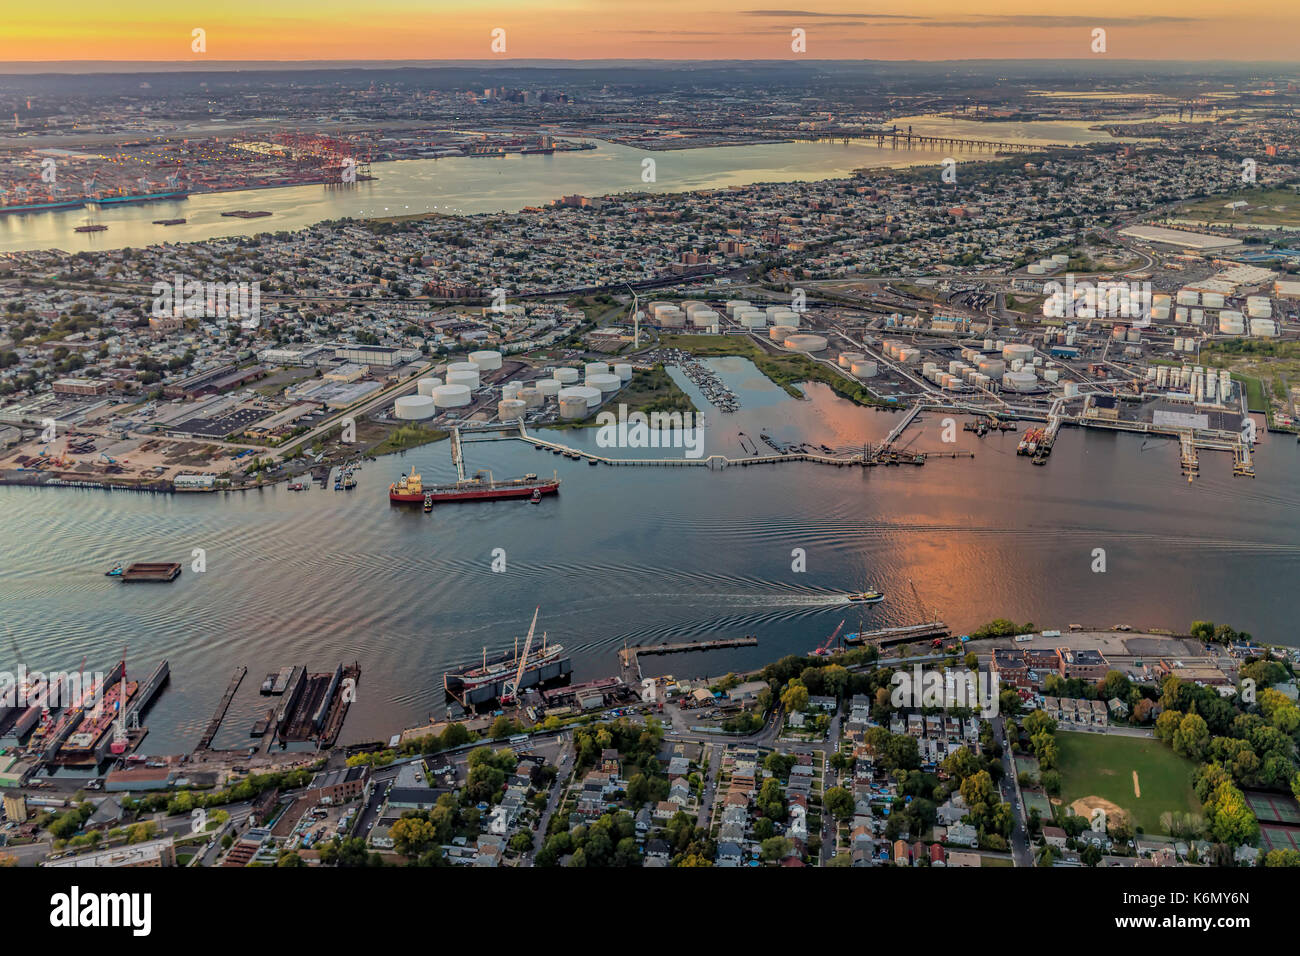 Luftaufnahme Hafen von NY und NJ - Luftbild der New York/New Jersey Hafen und den industriellen Bereich von Bayonne, New Jersey, Newark Ba begrenzt Stockfoto